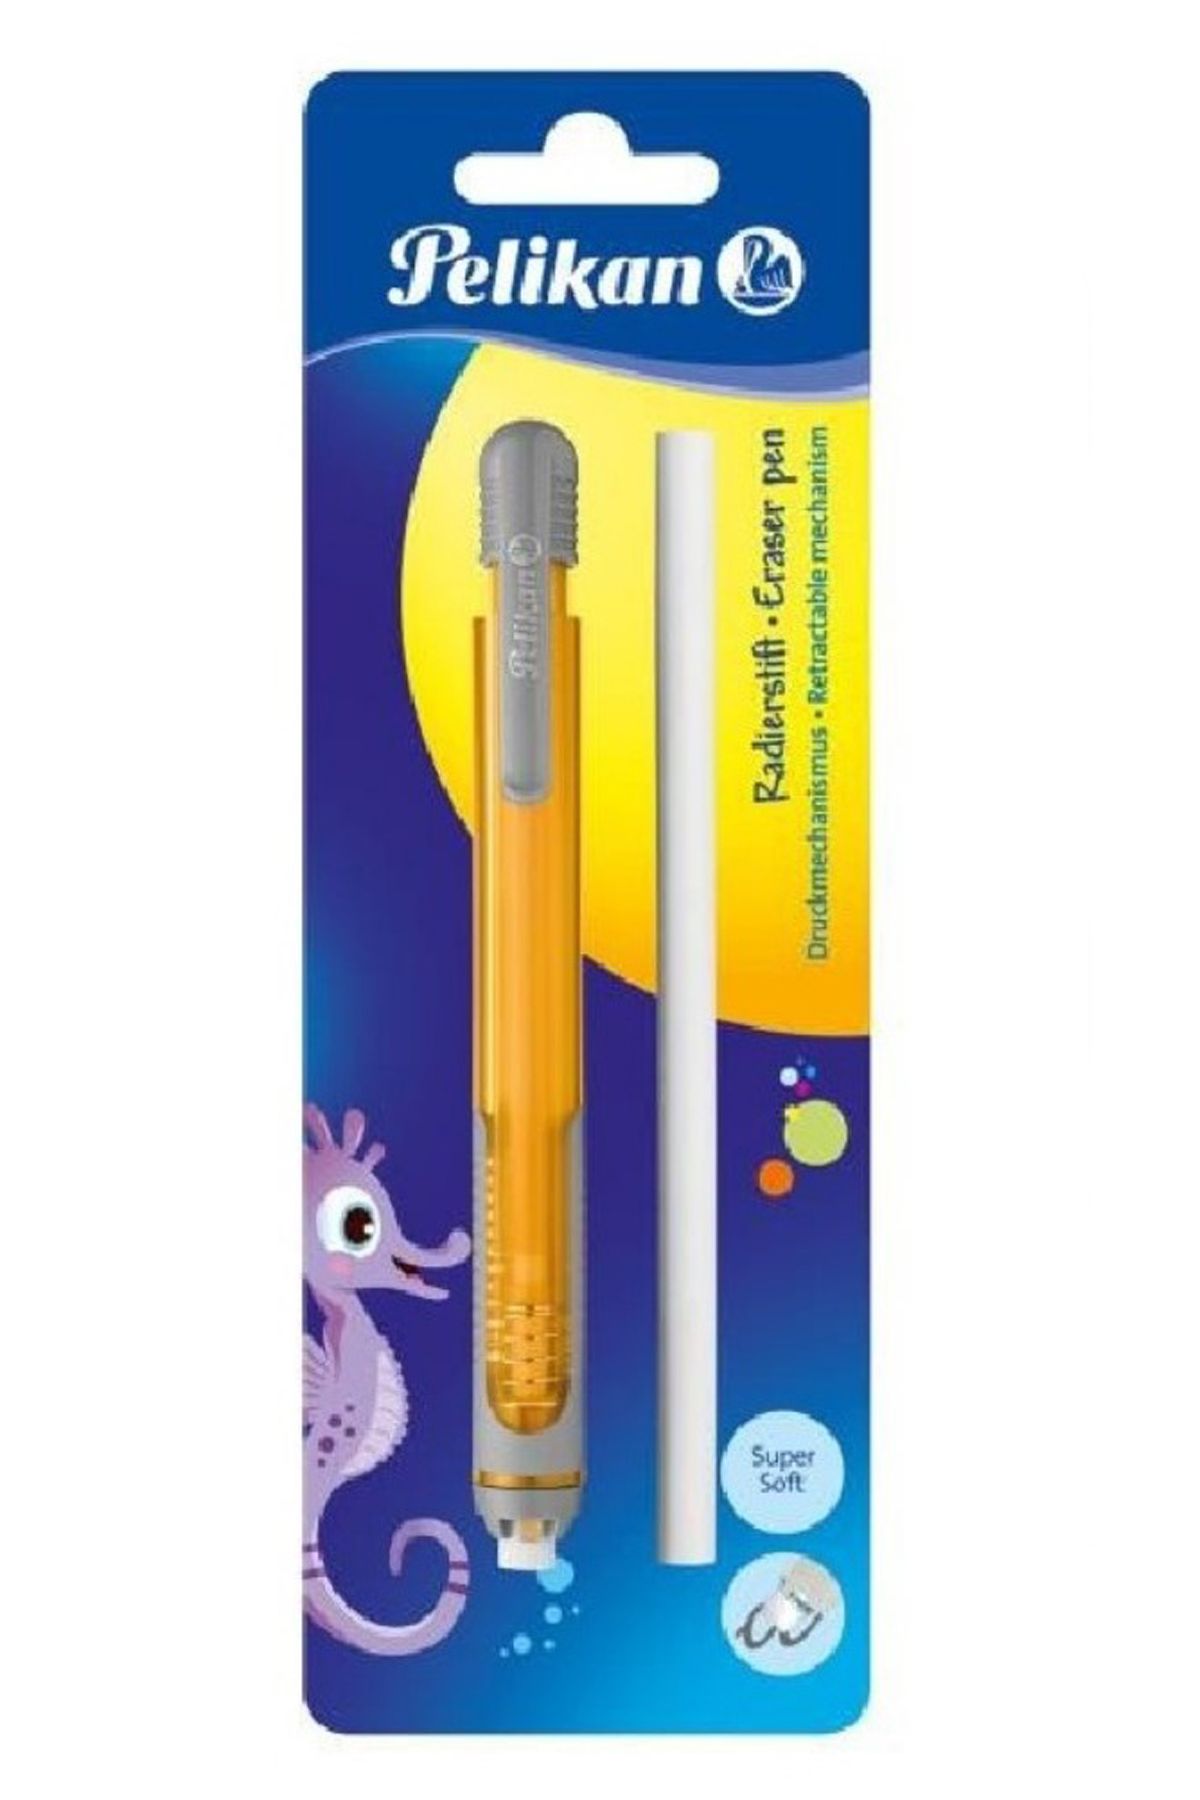 Pelikan turuncu kalem tipi silgi(kalem silgi) + yedek silgi